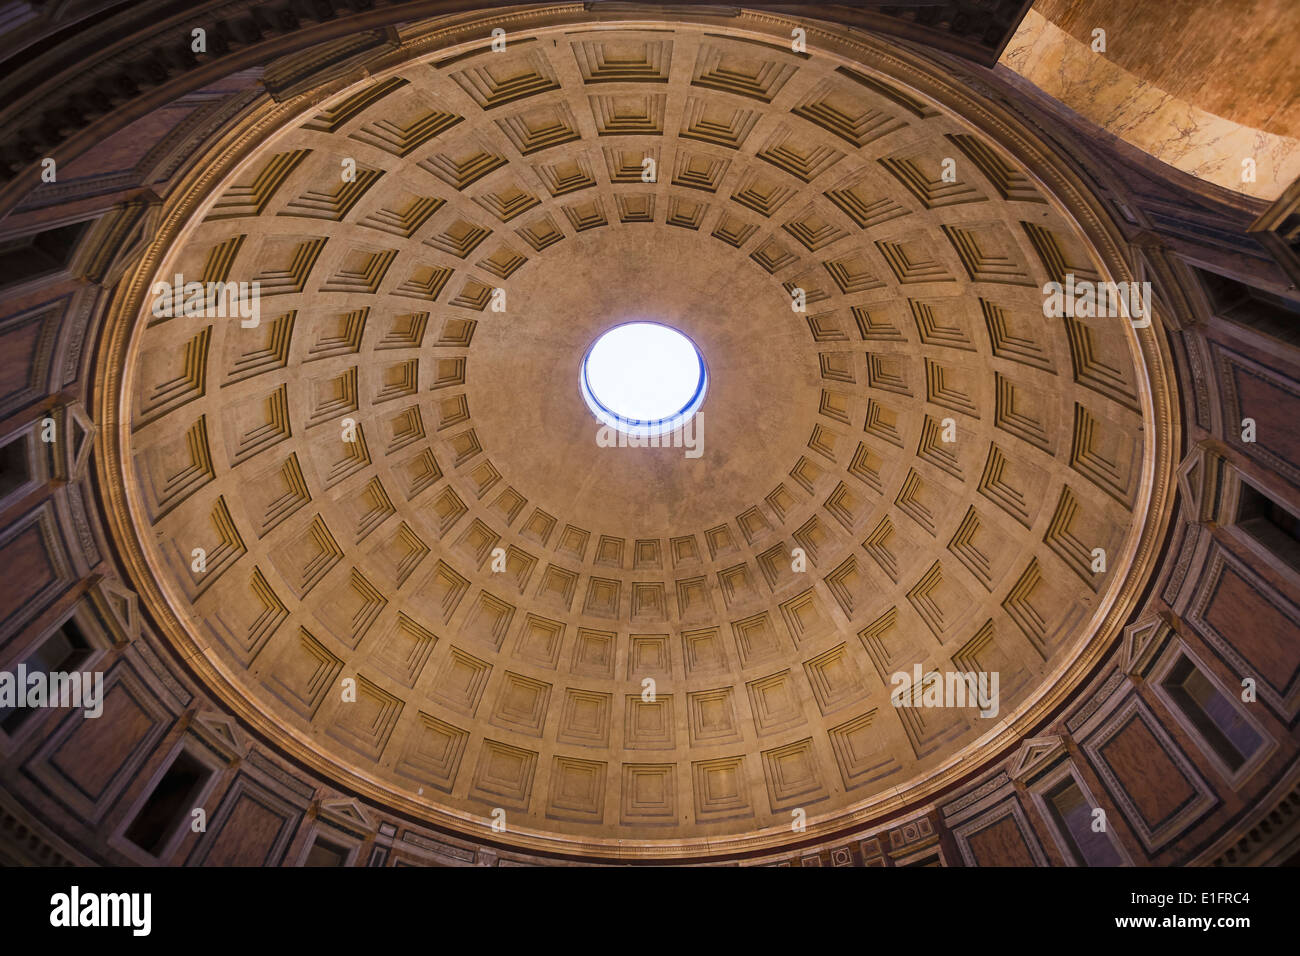 Rom, Italien. Die Kuppel des Pantheon. Innenraum. Die konkrete Kuppel stammt aus dem zweiten Jahrhundert n. Chr.. Stockfoto